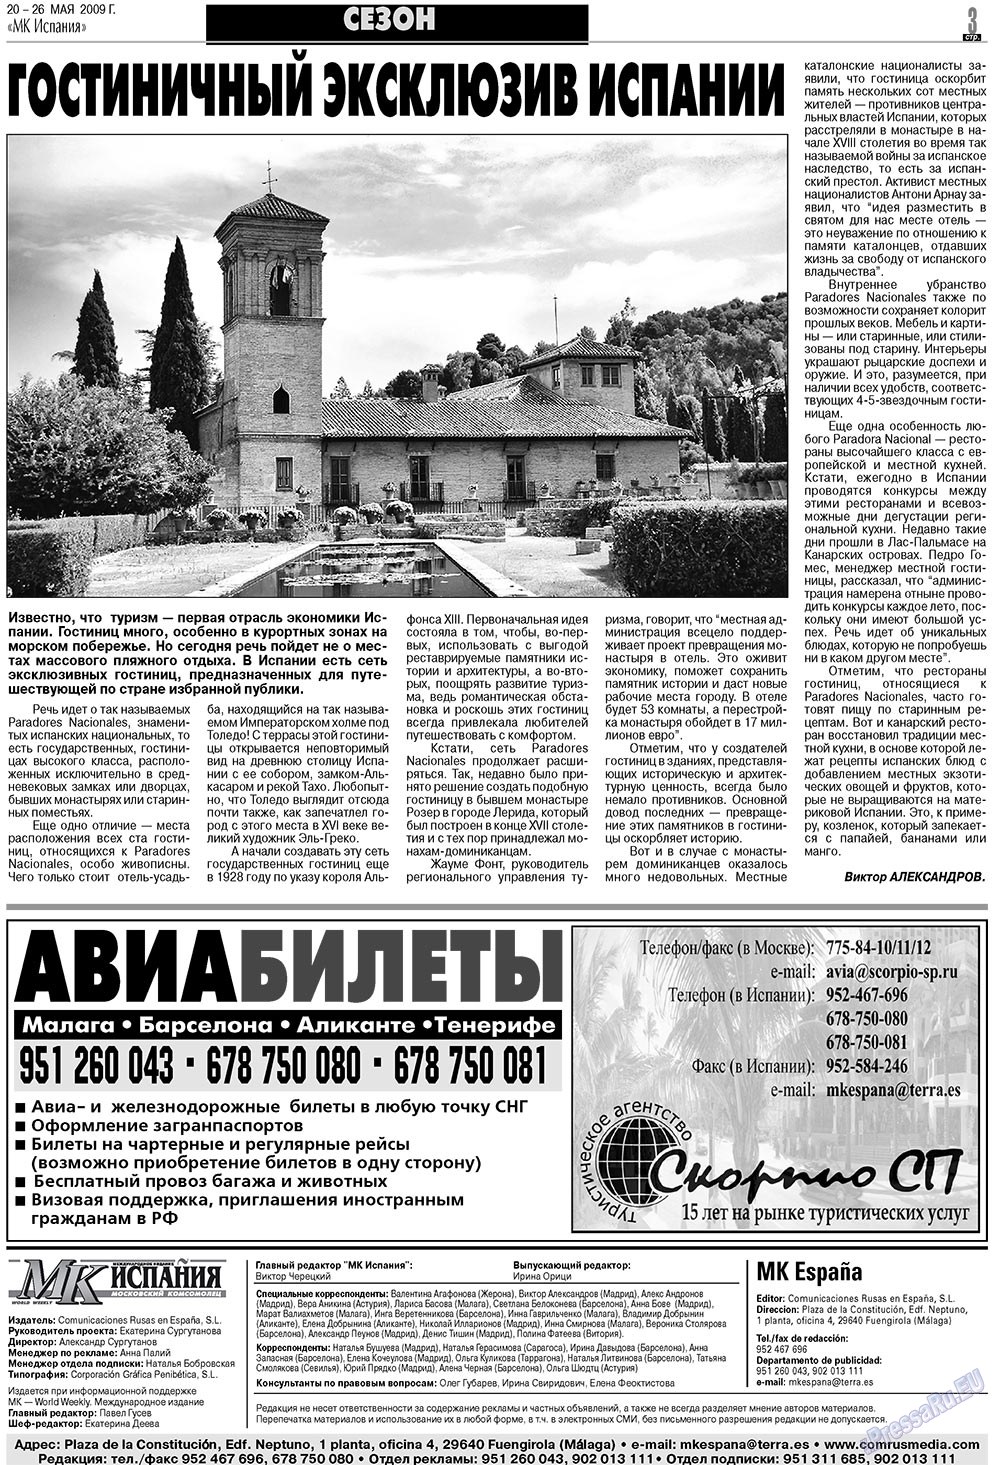 МК Испания, газета. 2009 №21 стр.3